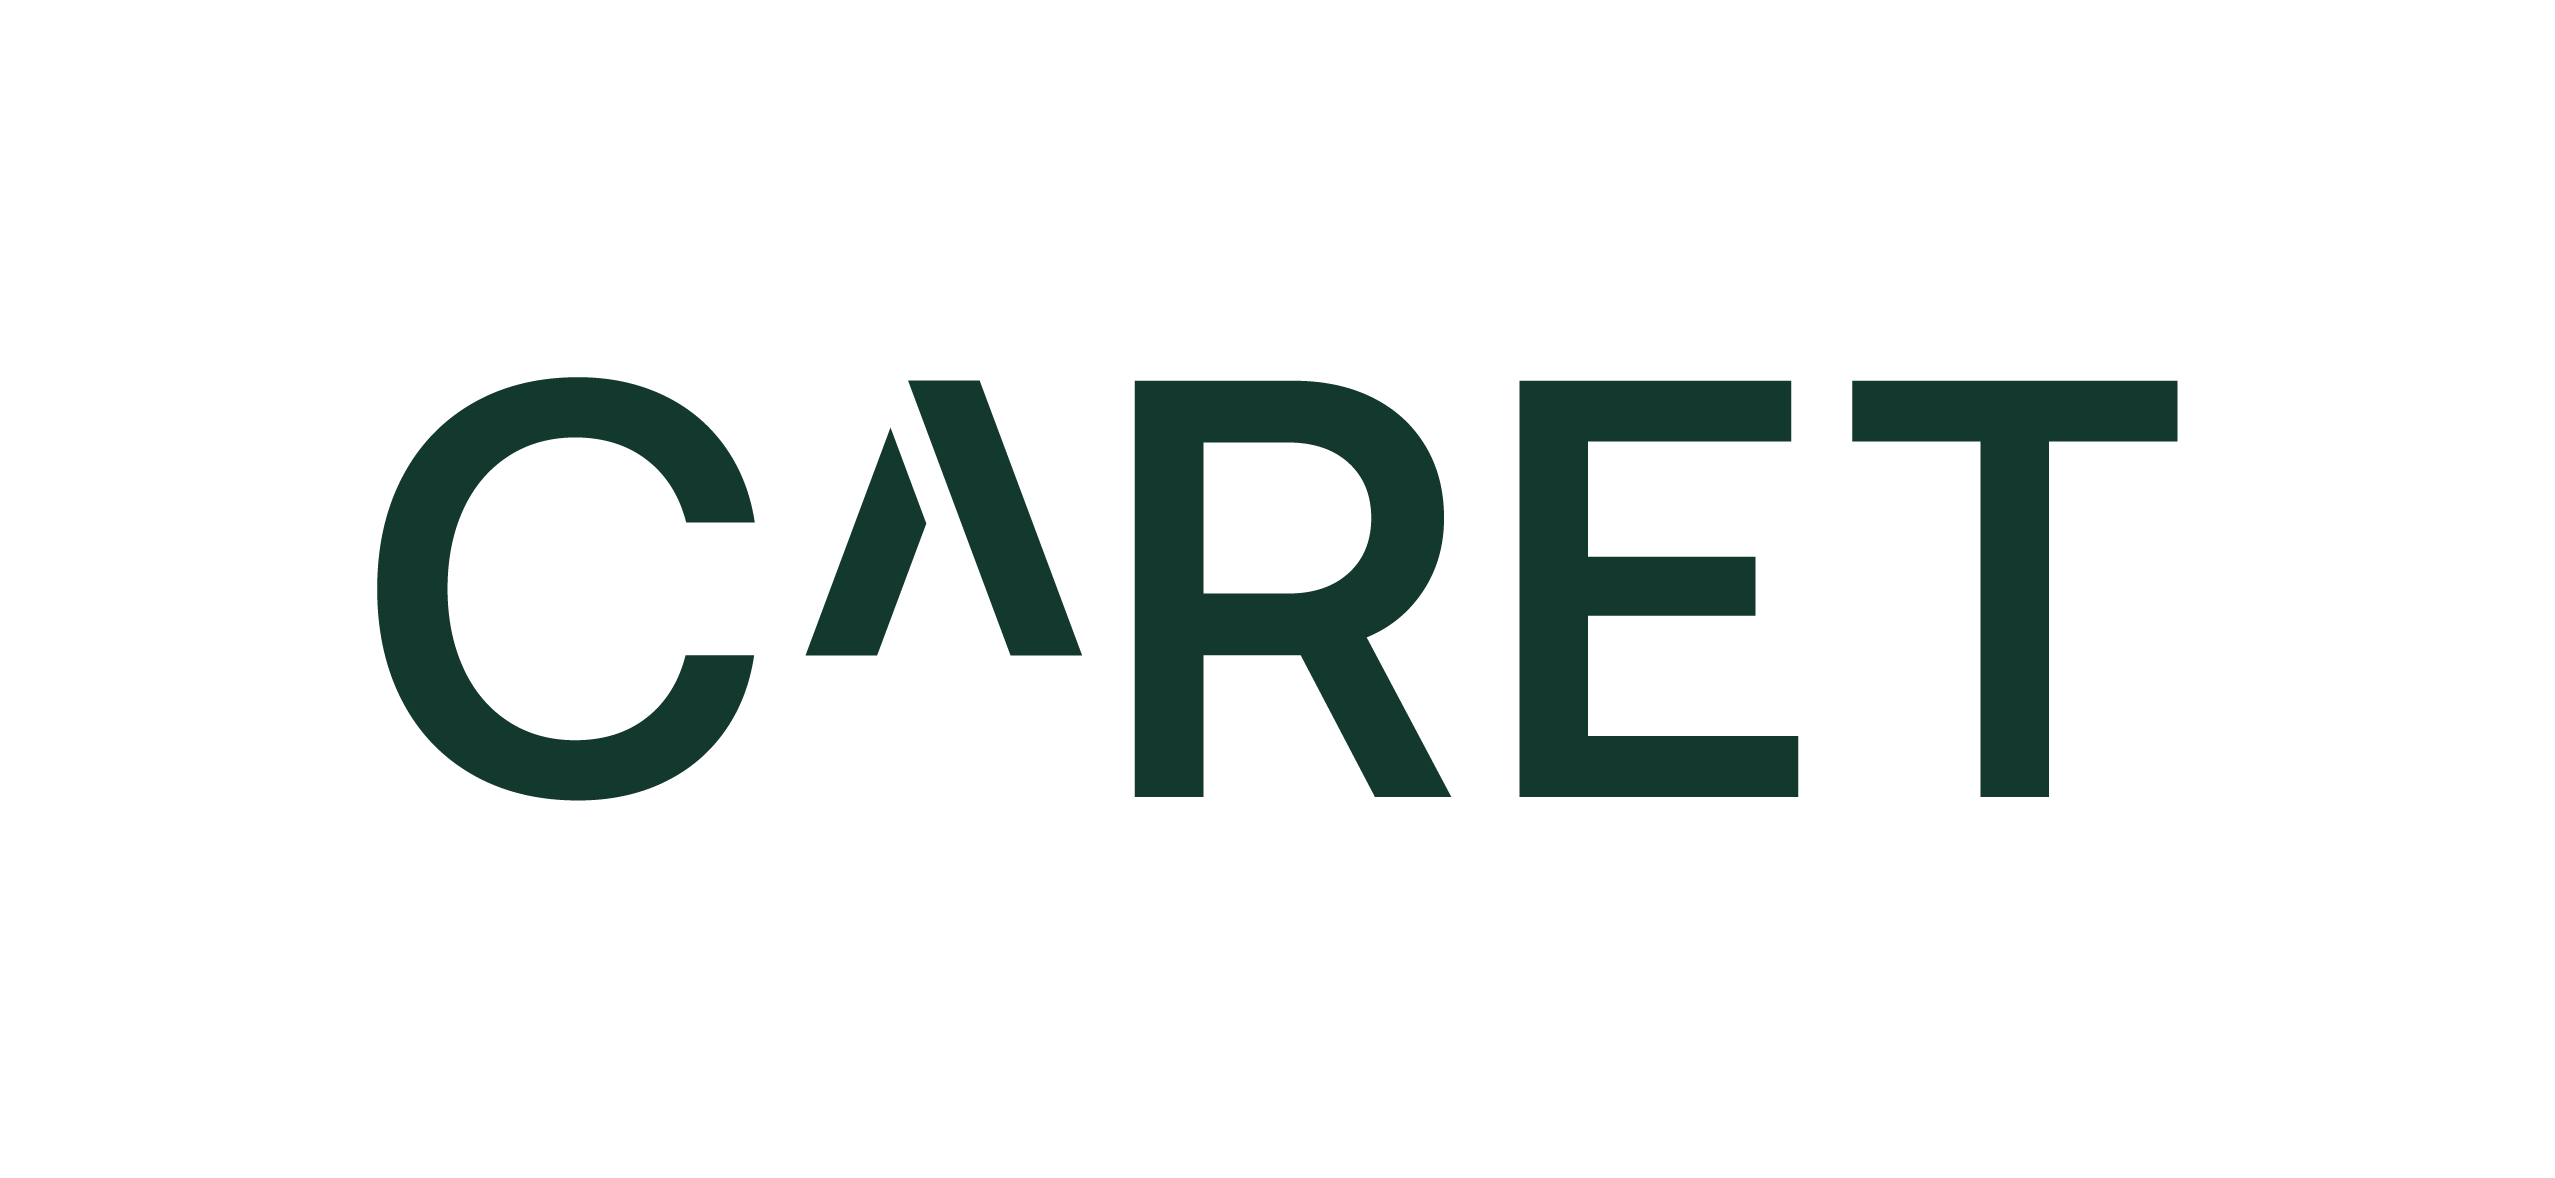 Caret_Logo_Pine-green_RGB.png